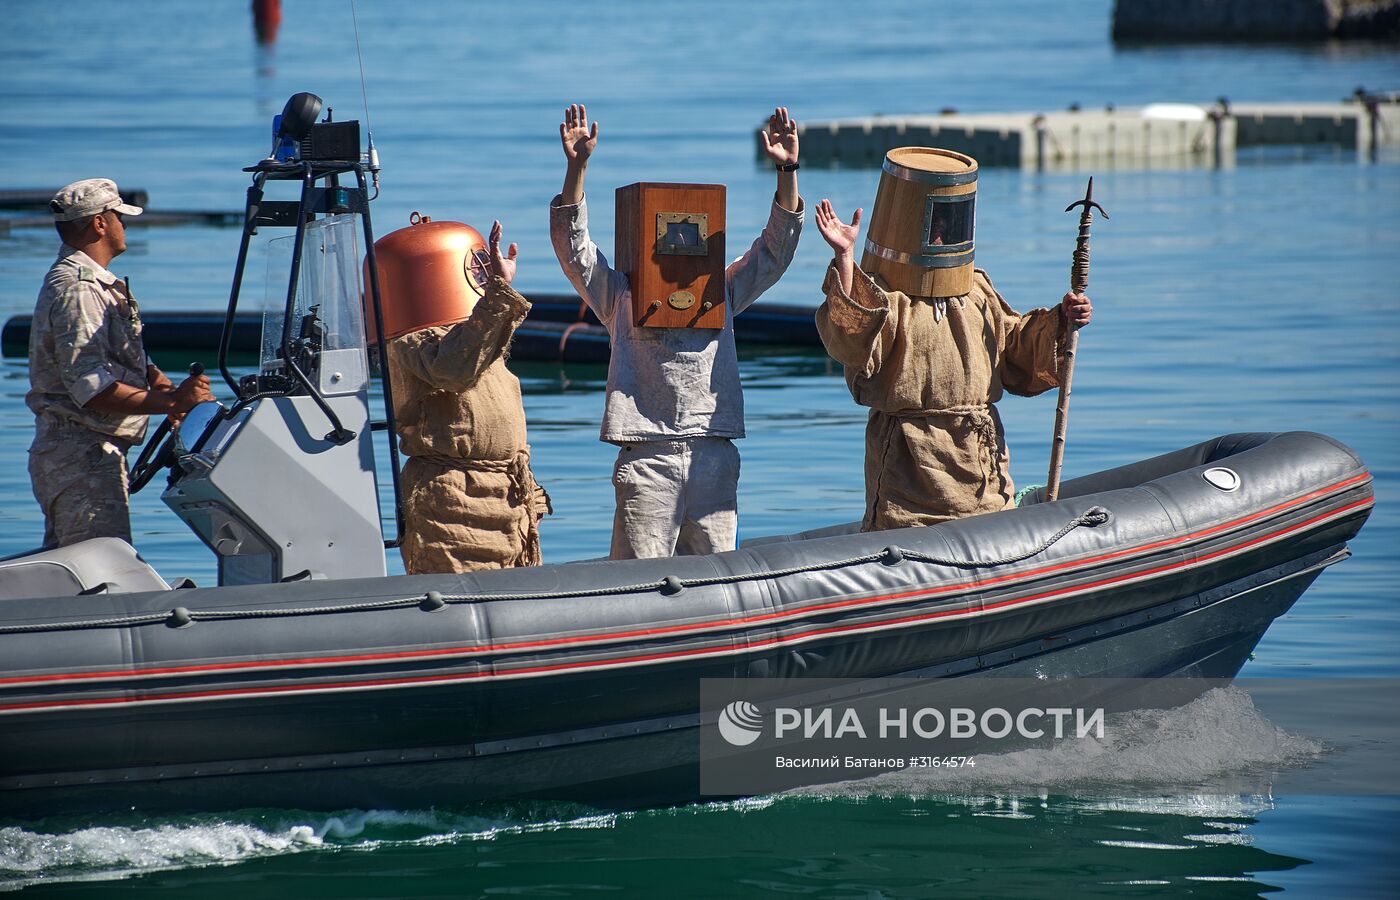 Открытие международного конкурса по водолазному многоборью "Глубина - 2017" в Севастополе